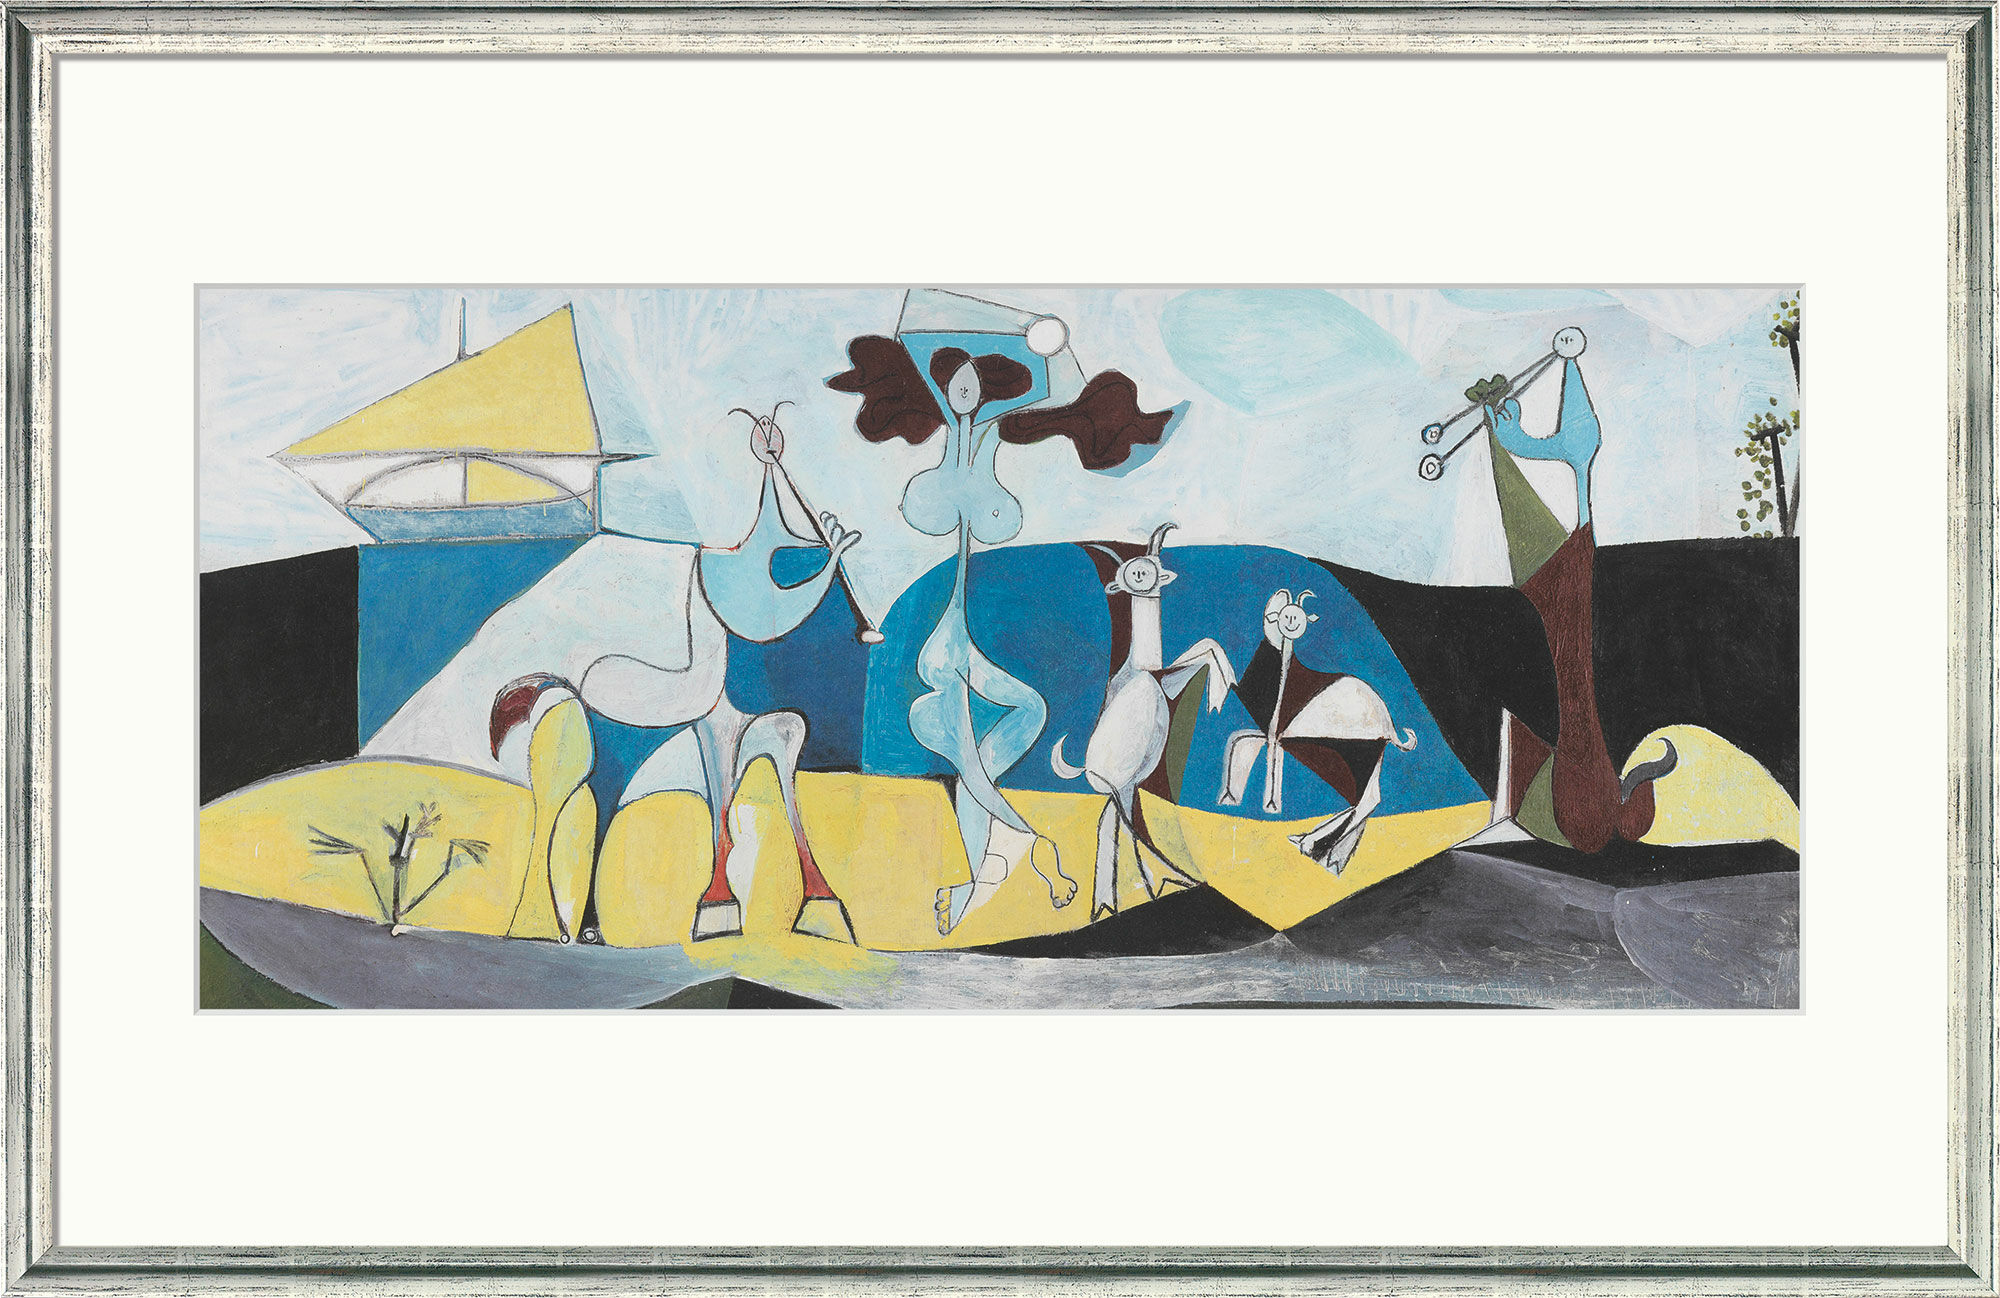 Billede "Livets glæde" (1946), indrammet von Pablo Picasso